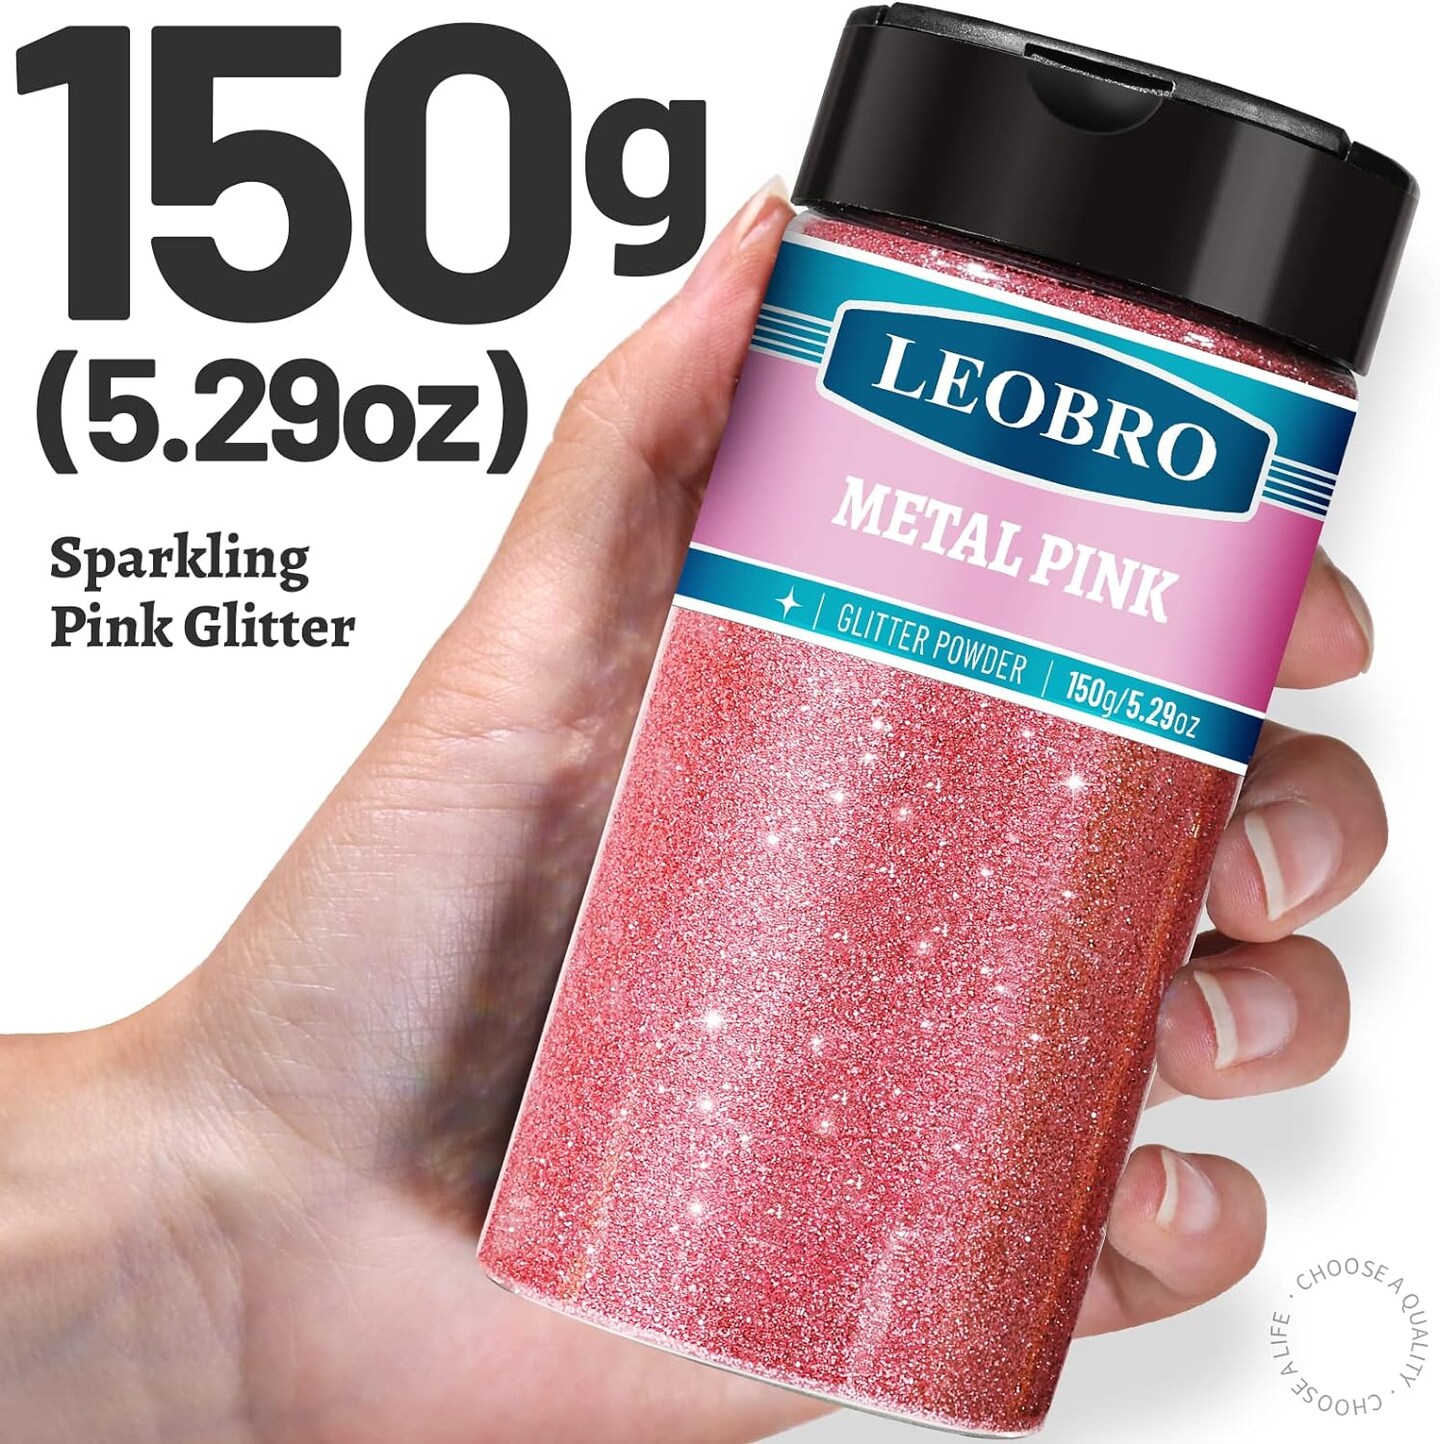 LEOBRO Sparkling Powder Glitter